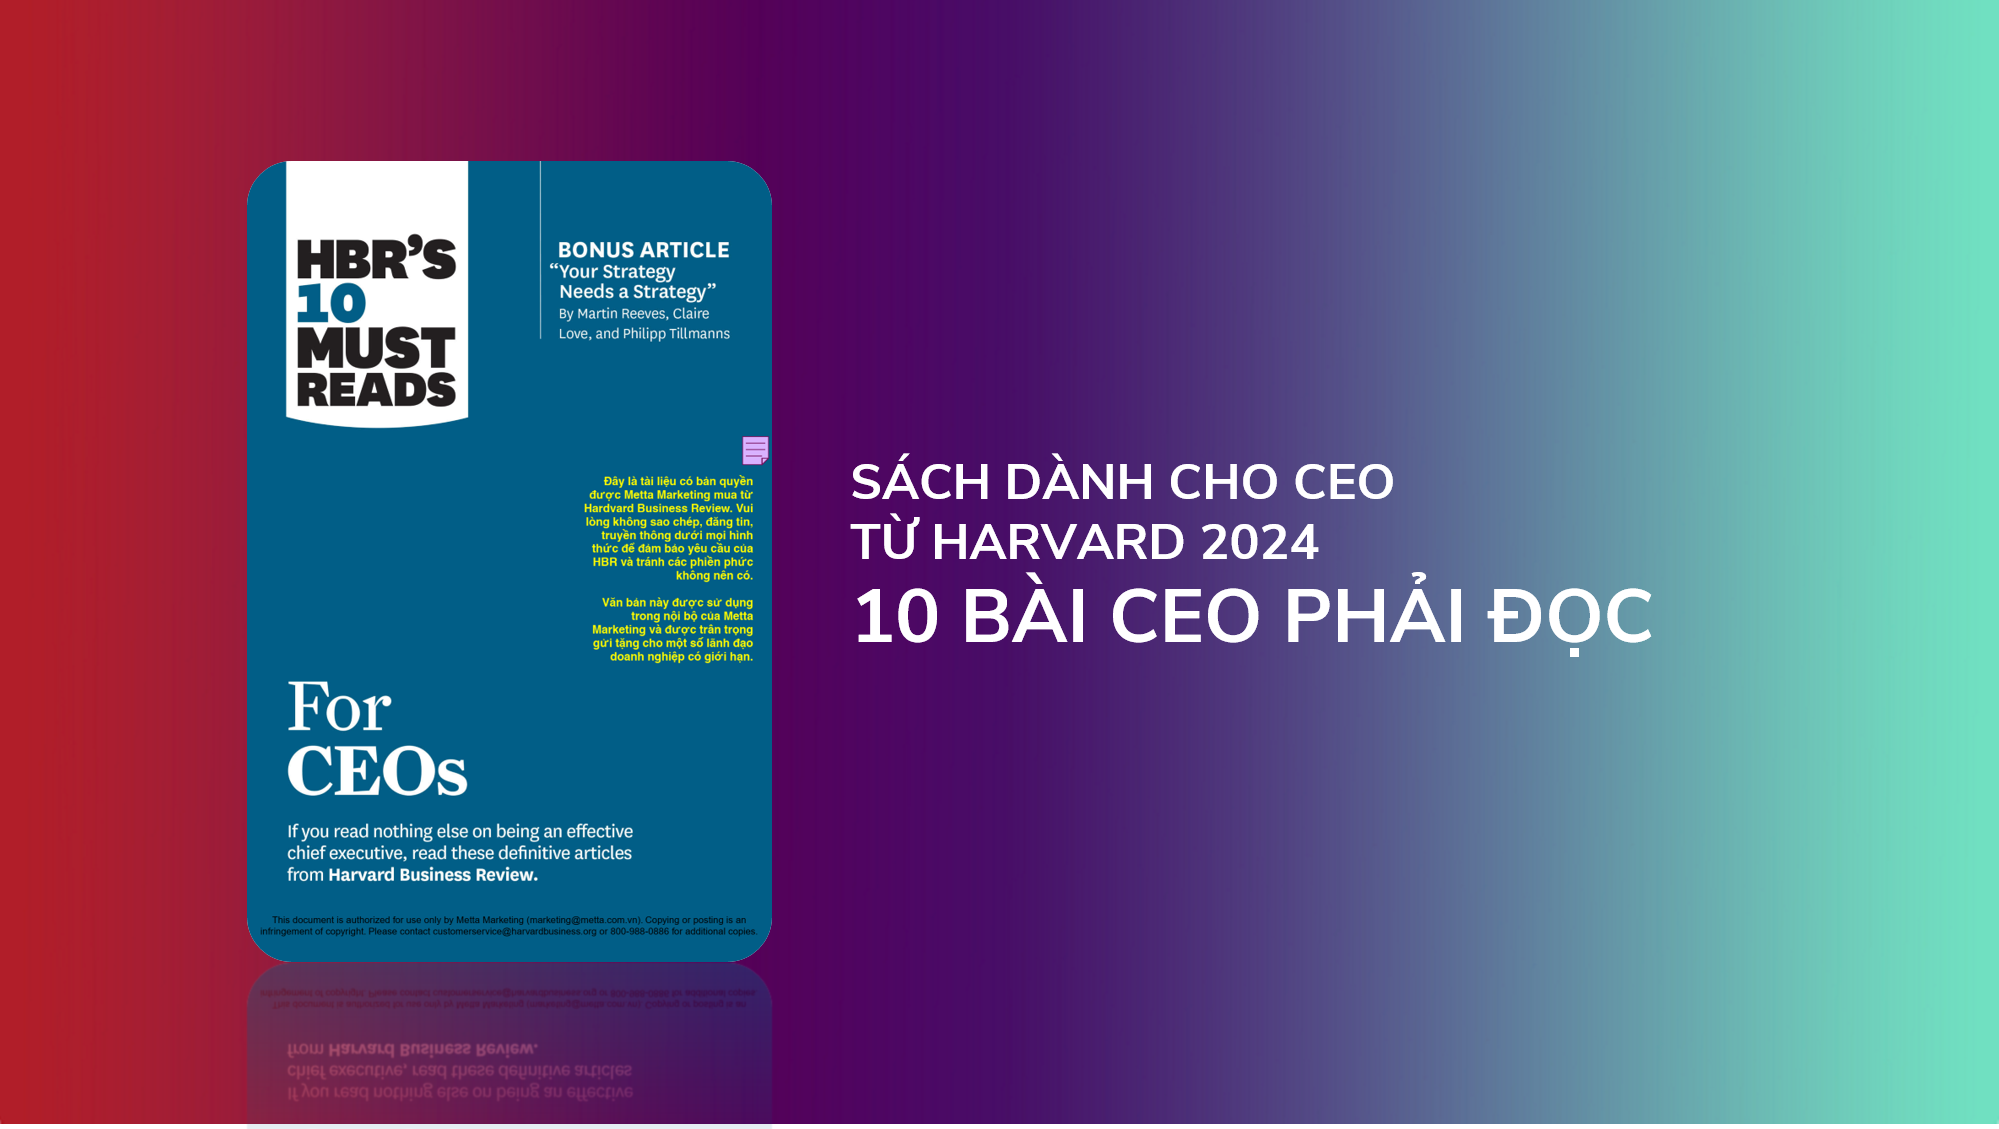 SACH DANH CHO CEO TU HARVARD 2024 10 BAI CEO PHAI DOC 1